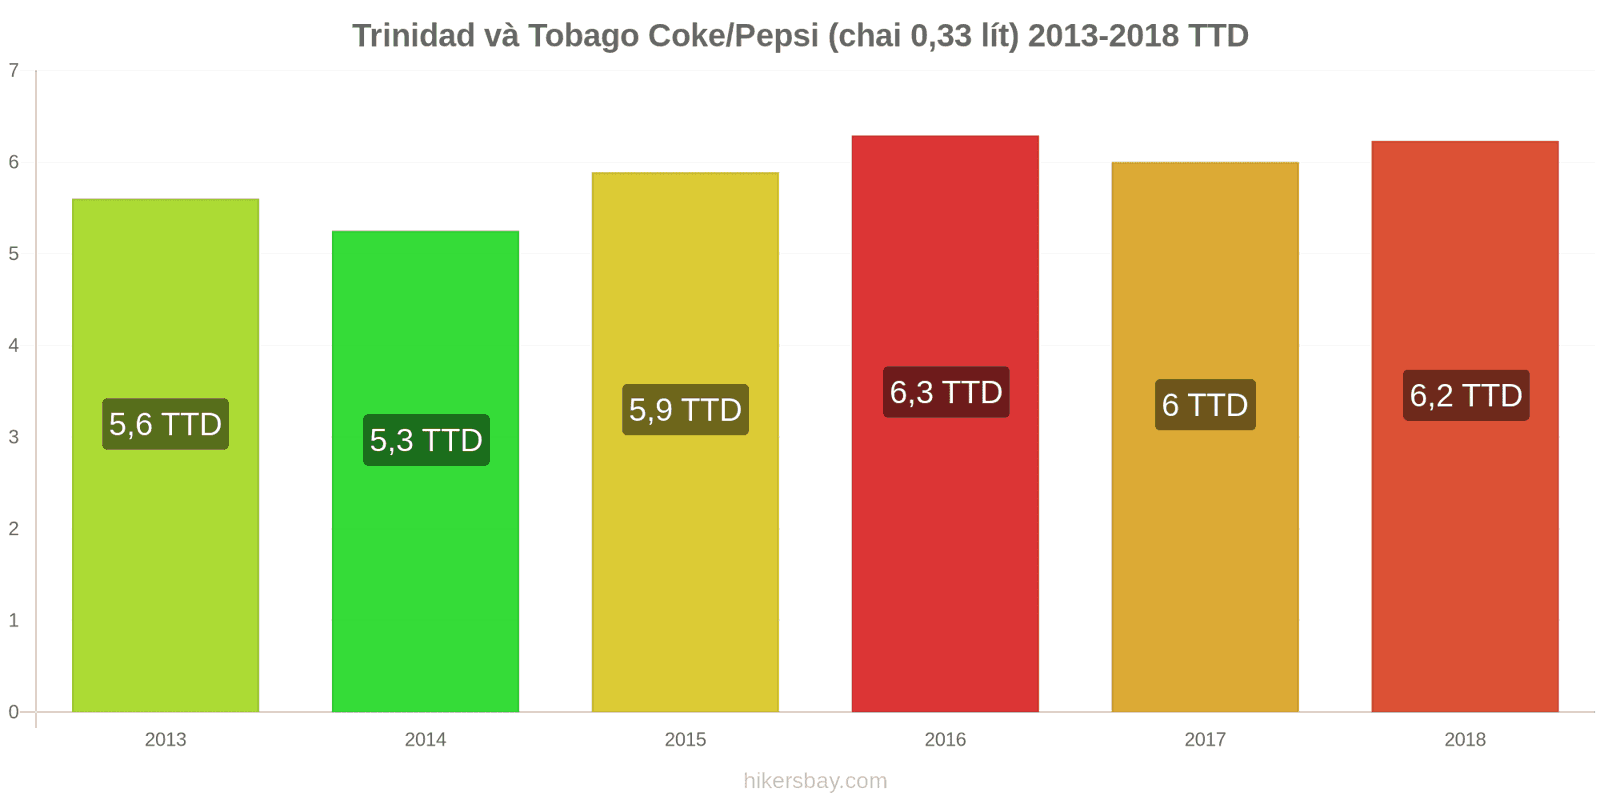 Trinidad và Tobago thay đổi giá cả Coca-Cola/Pepsi (chai 0.33 lít) hikersbay.com